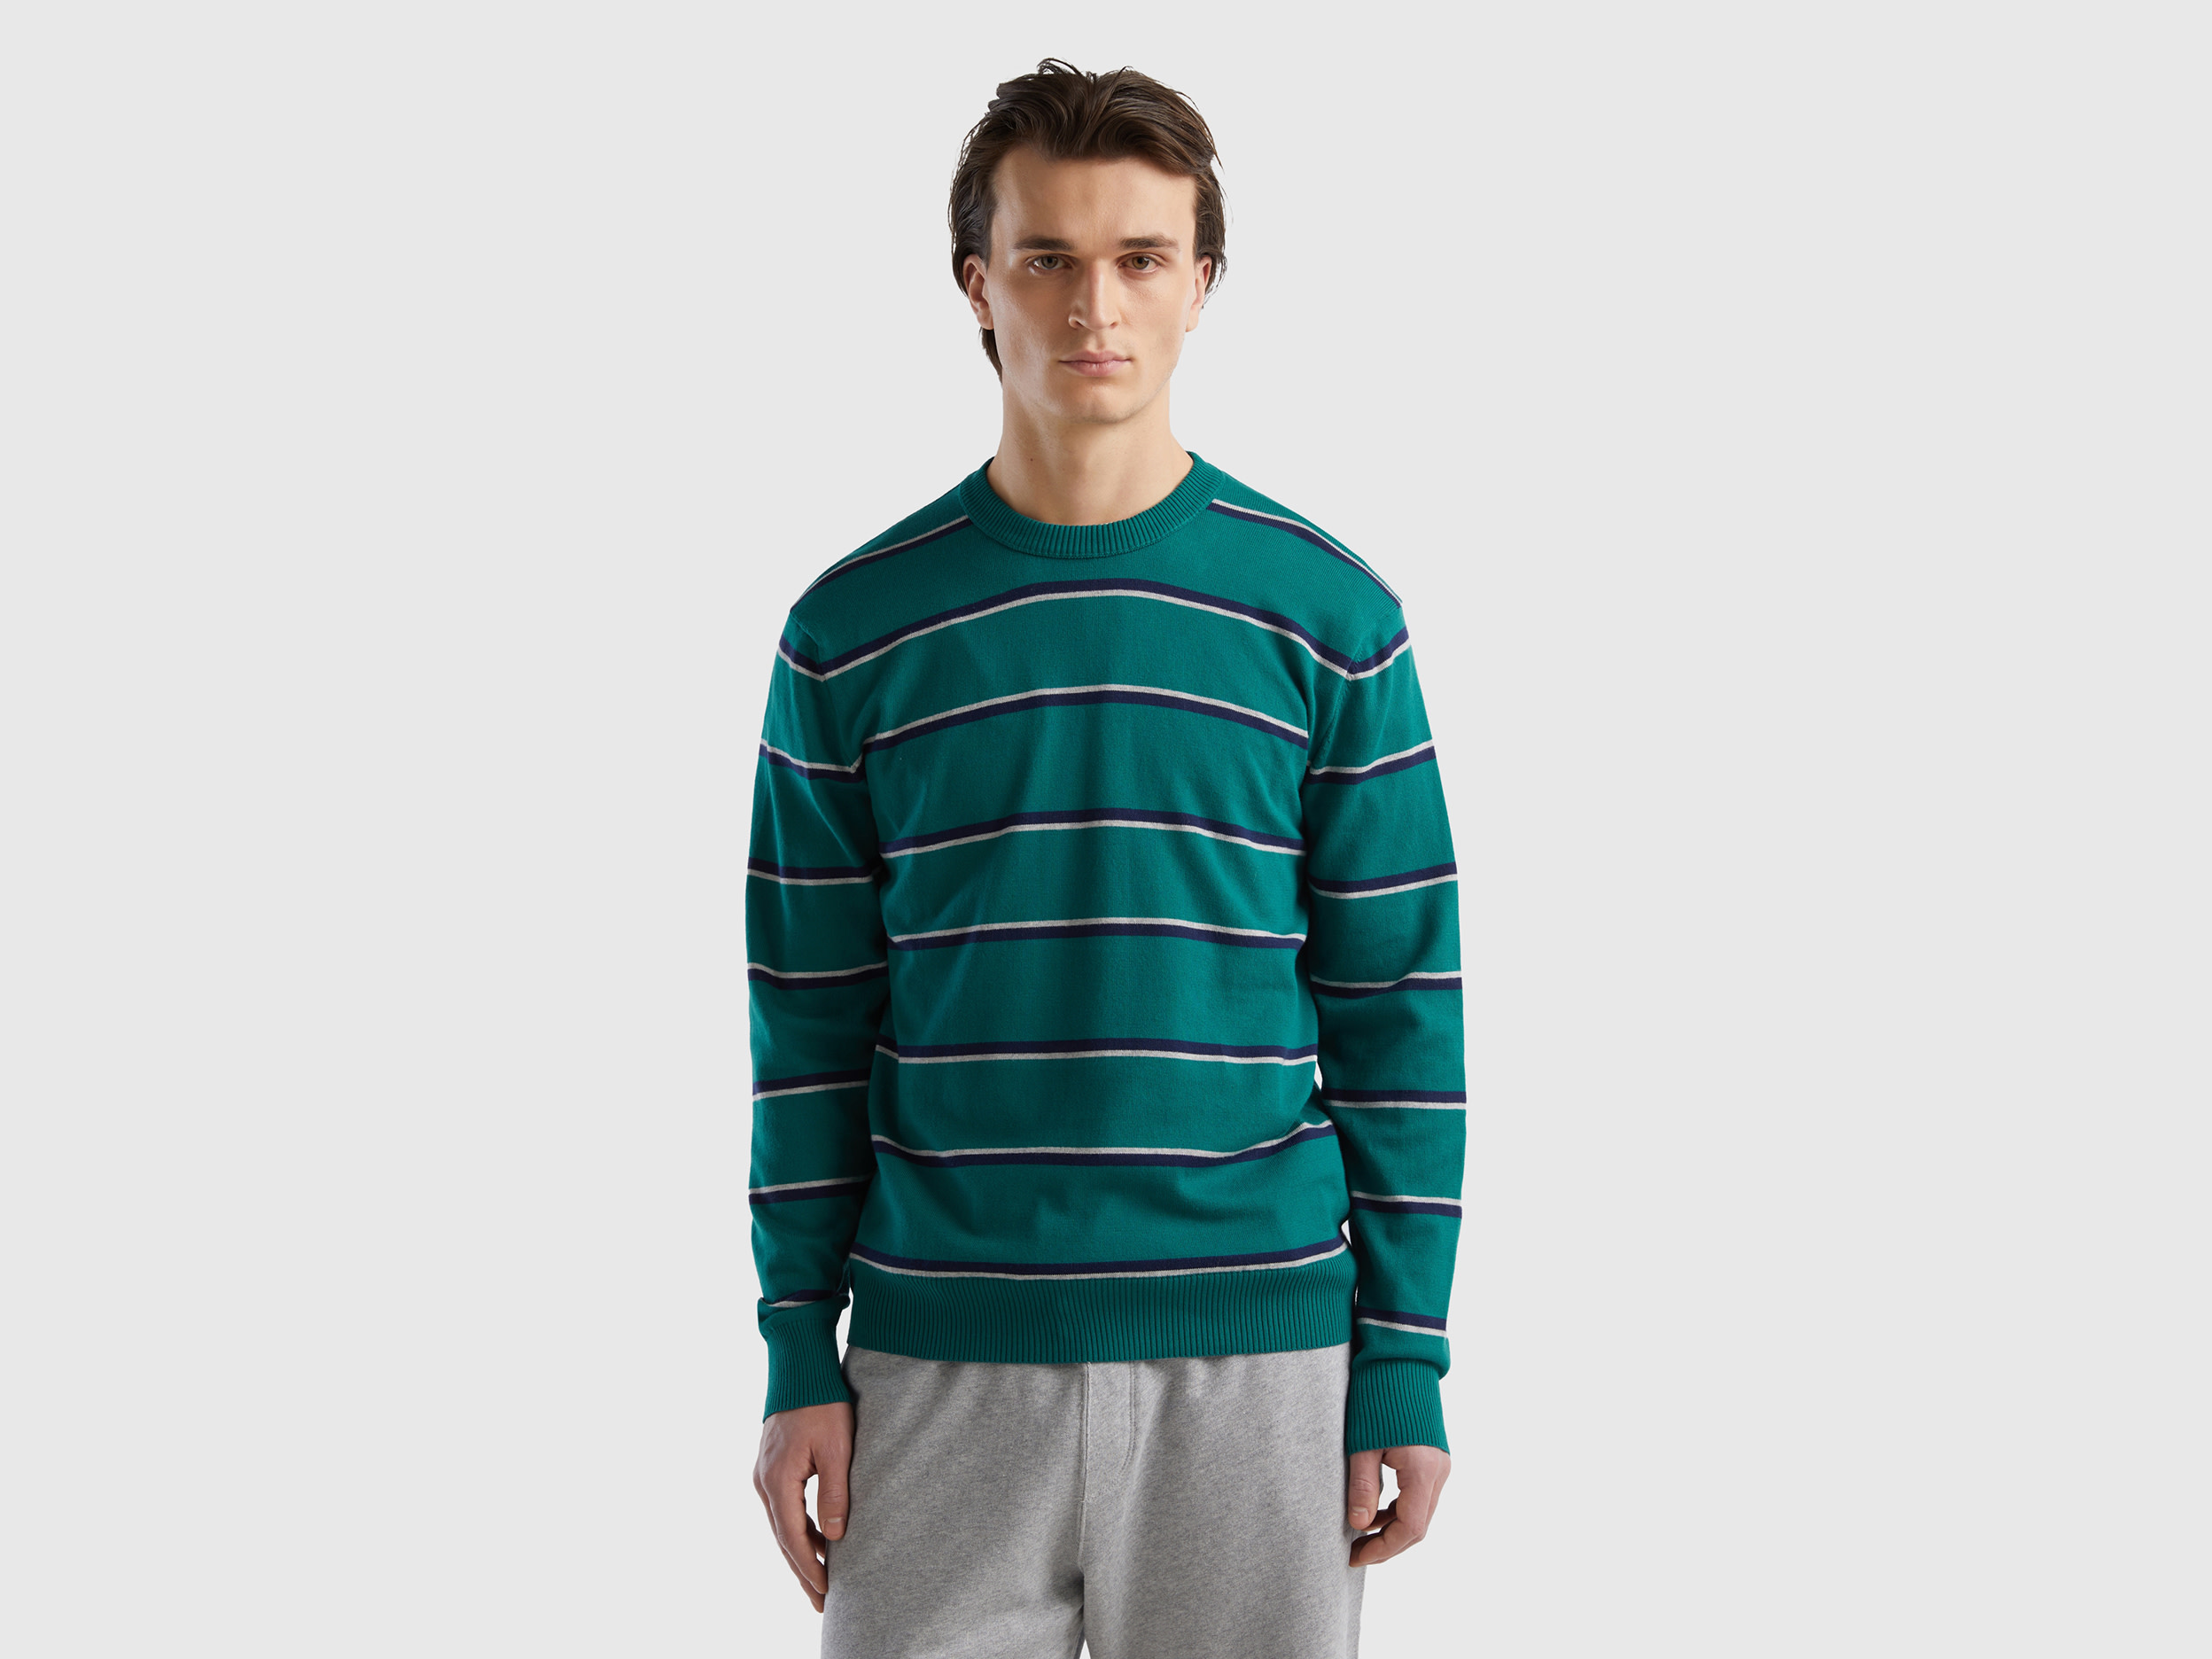 Benetton, Striped 100% Cotton Sweater, size XXL, Dark Green, Men